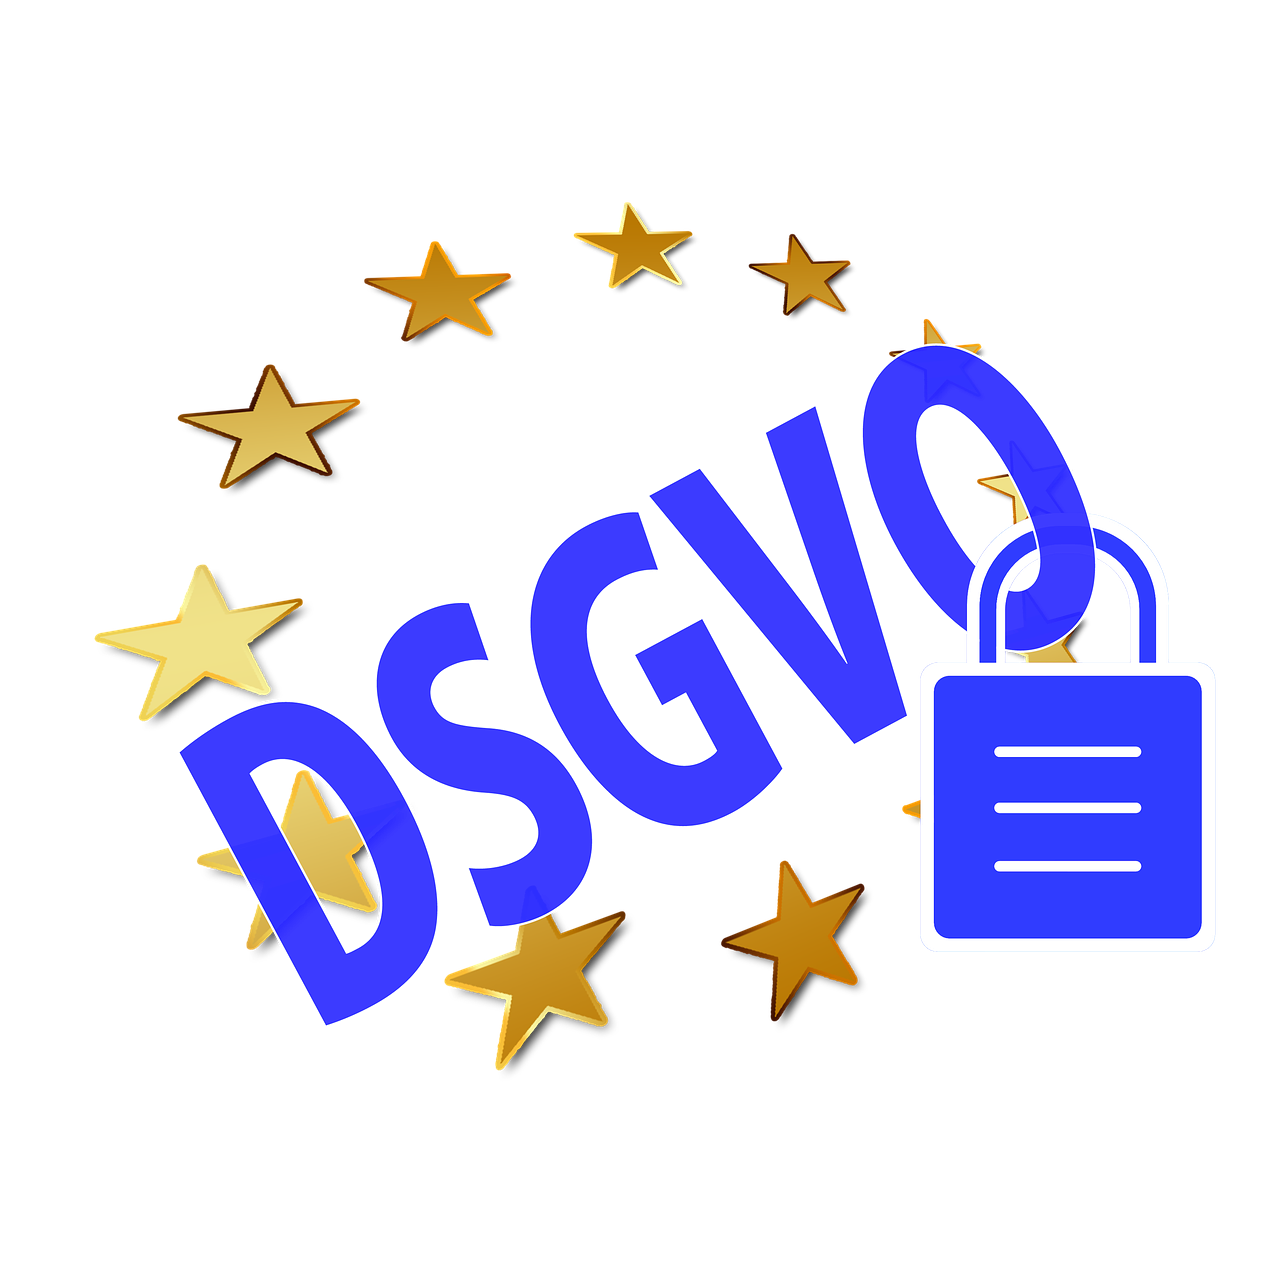 Der Auskunftsanspruch nach Art. 15 DSGVO und seine Grenzen gemäß LG Köln